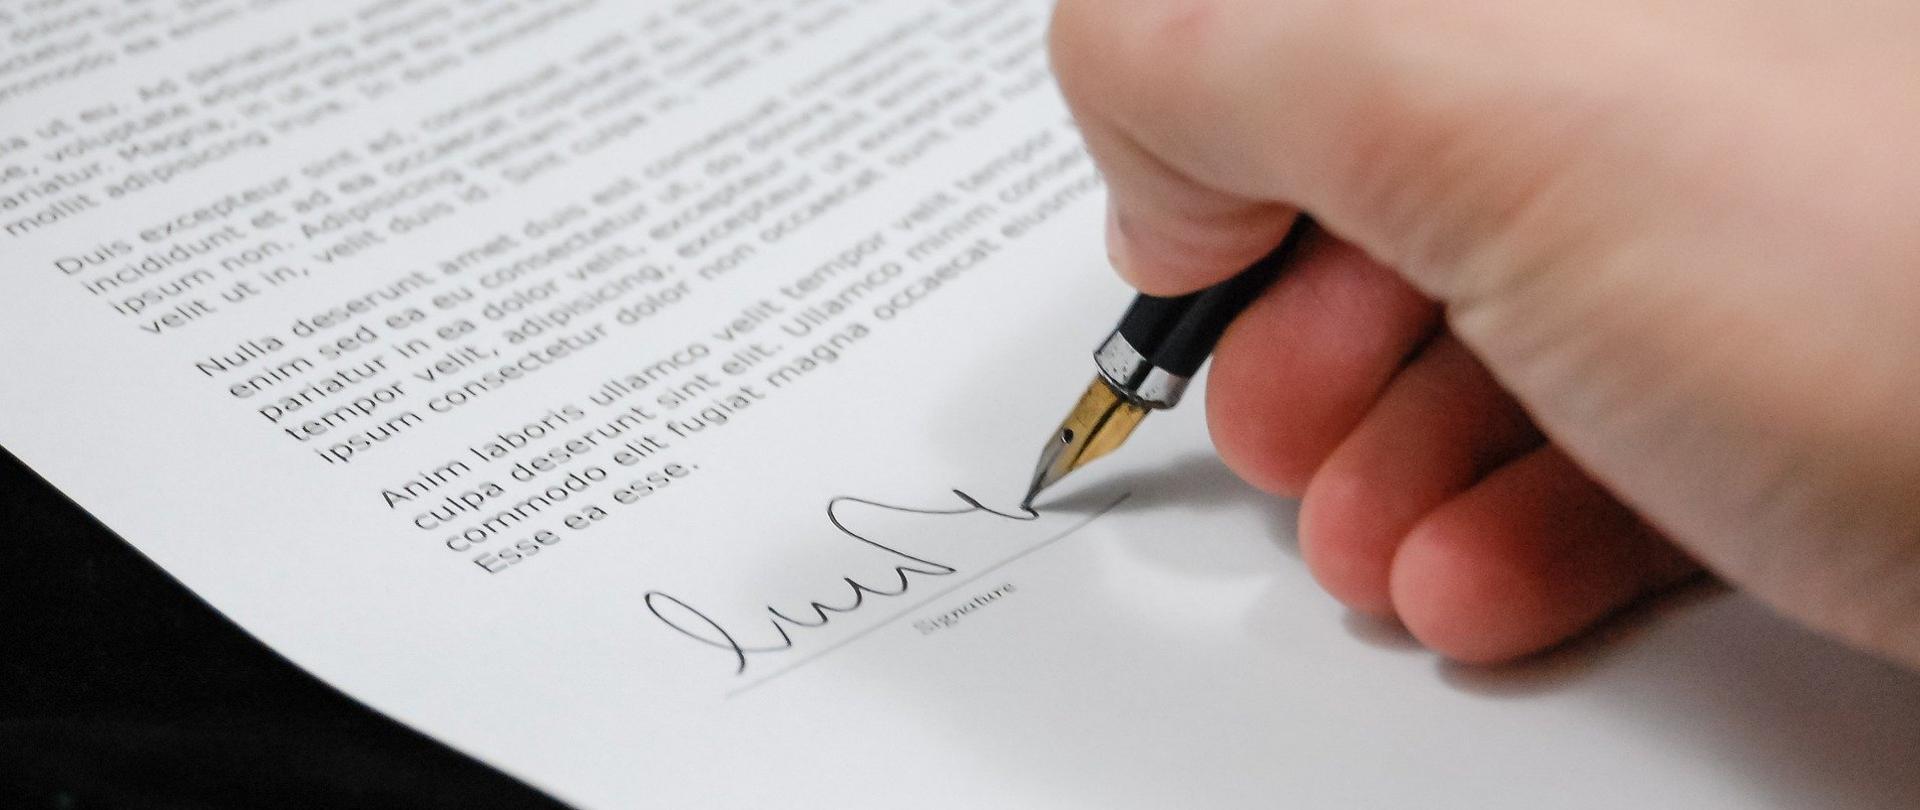 Zdjęcie przedstawia dłoń z długopisem w ręce piszącą po kartce